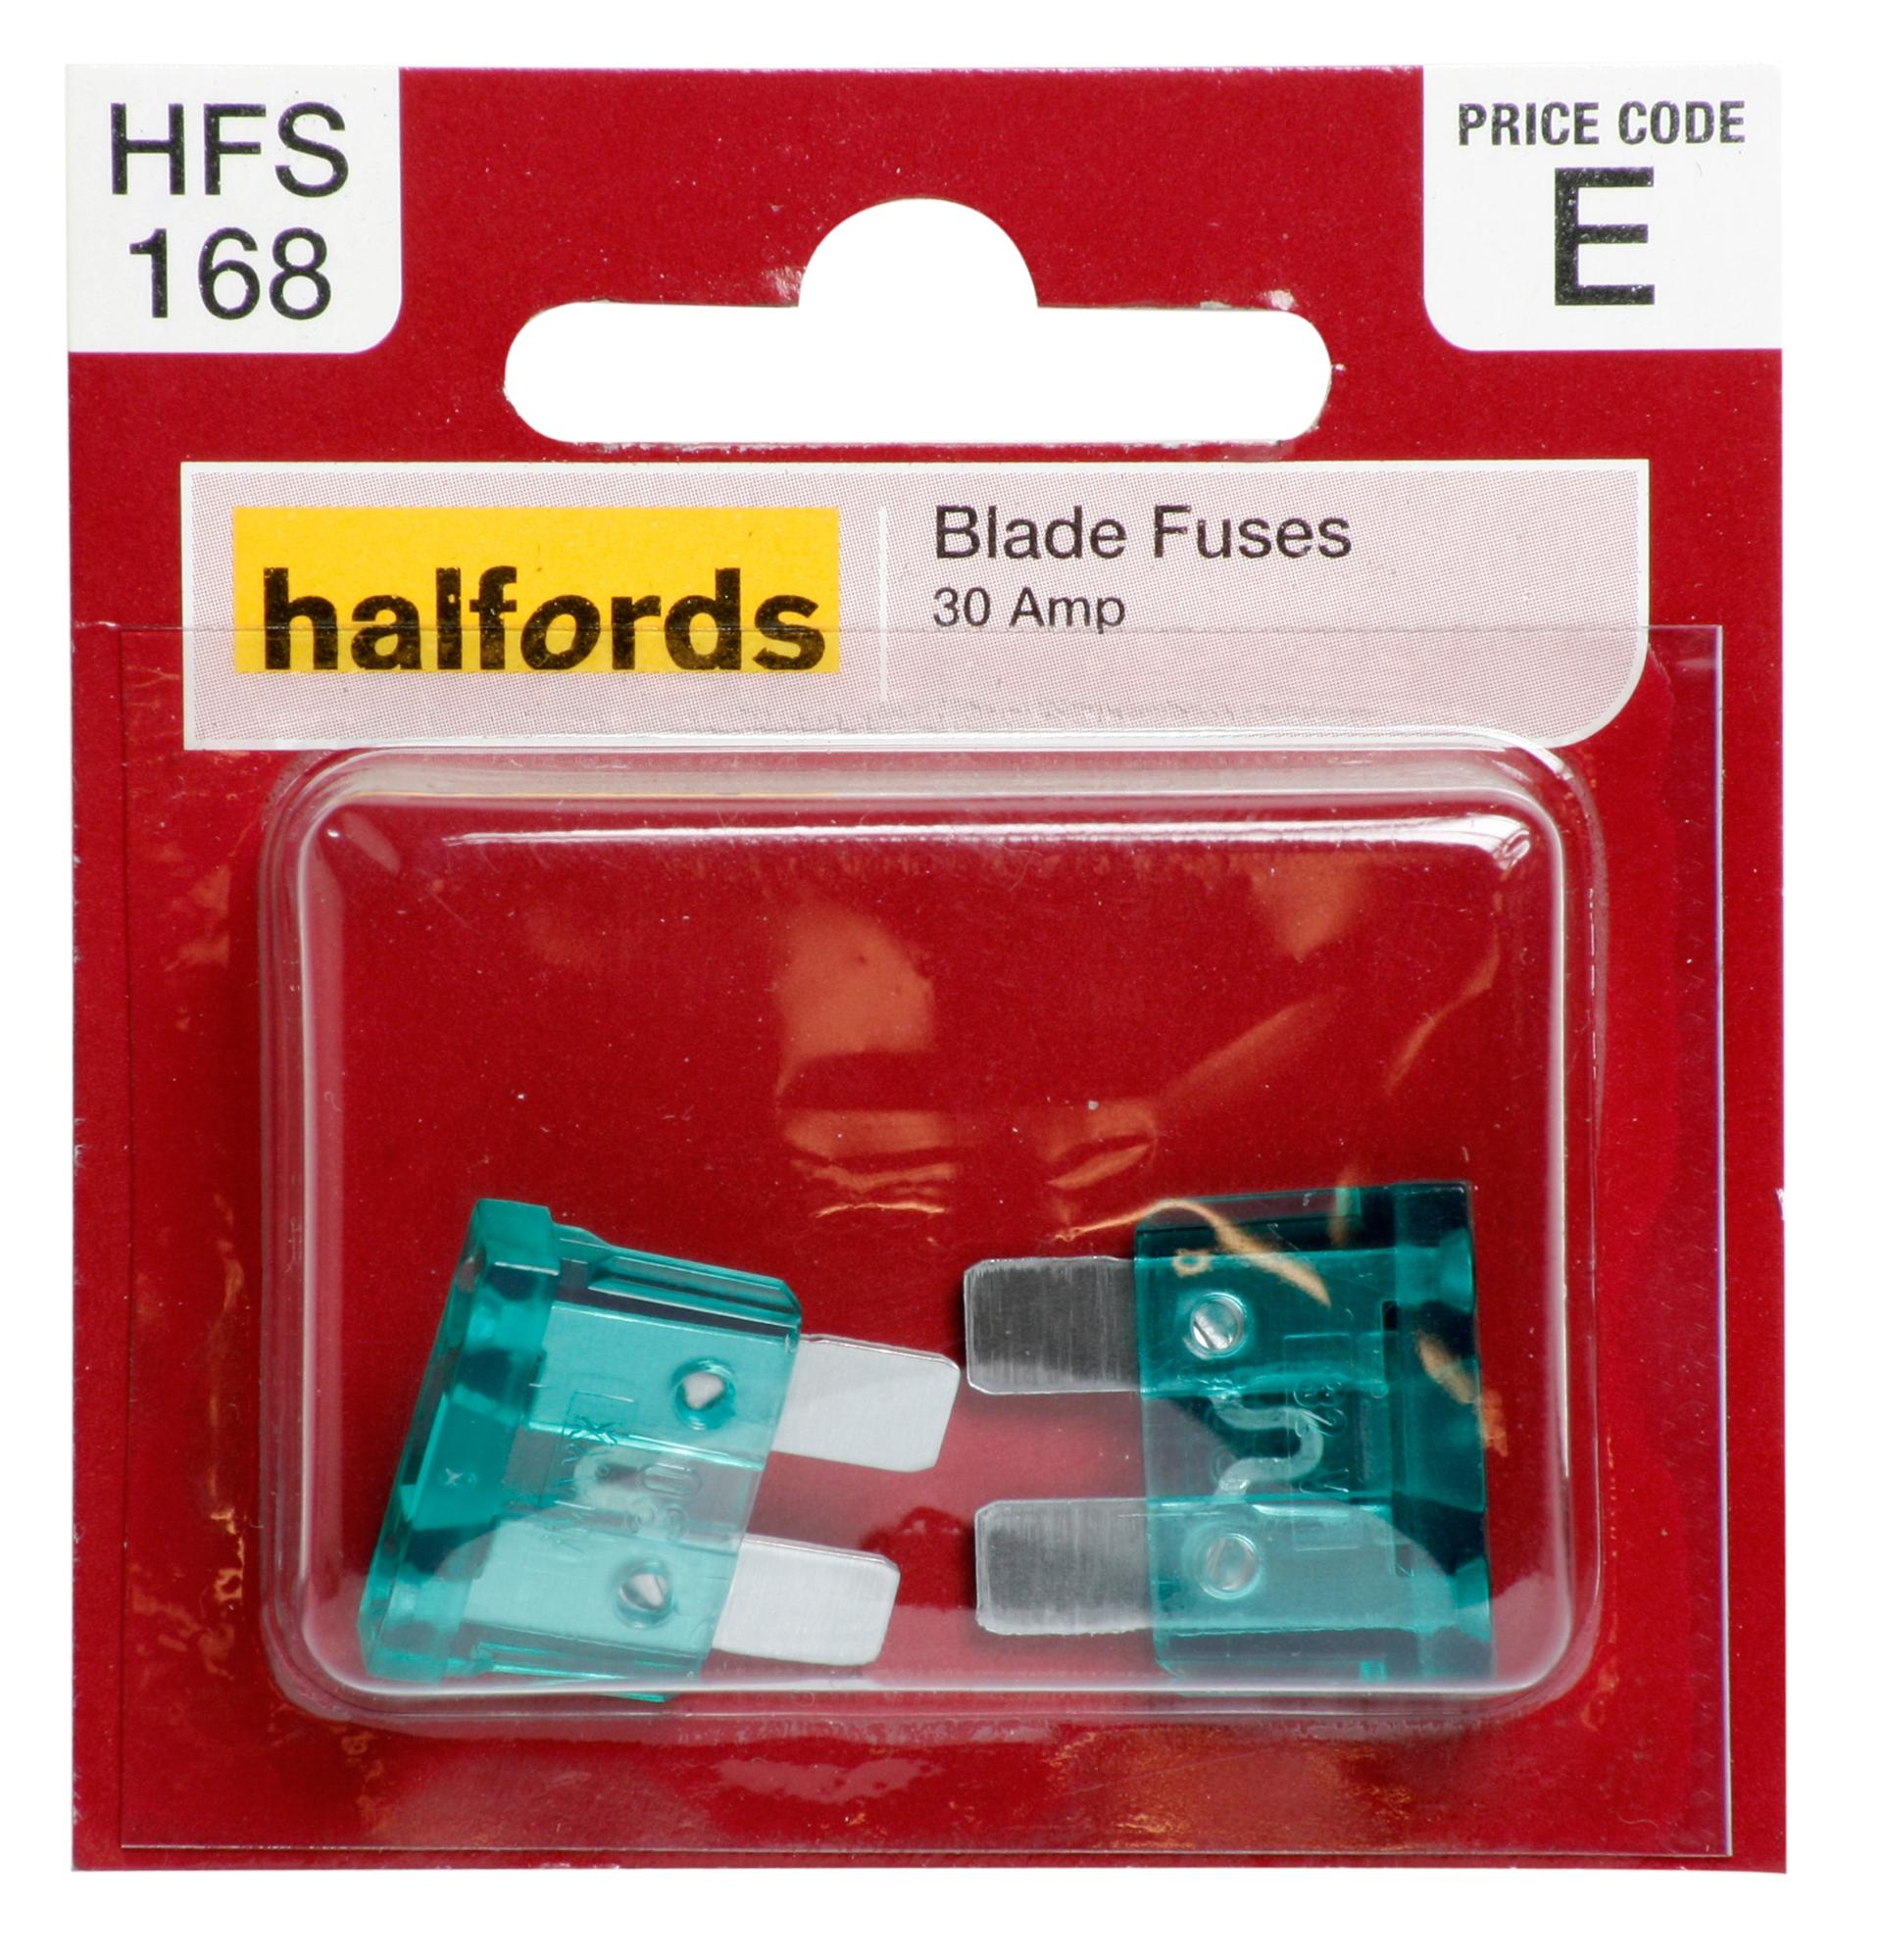 Halfords Blade Fuses 30 Amp (Hfs168)